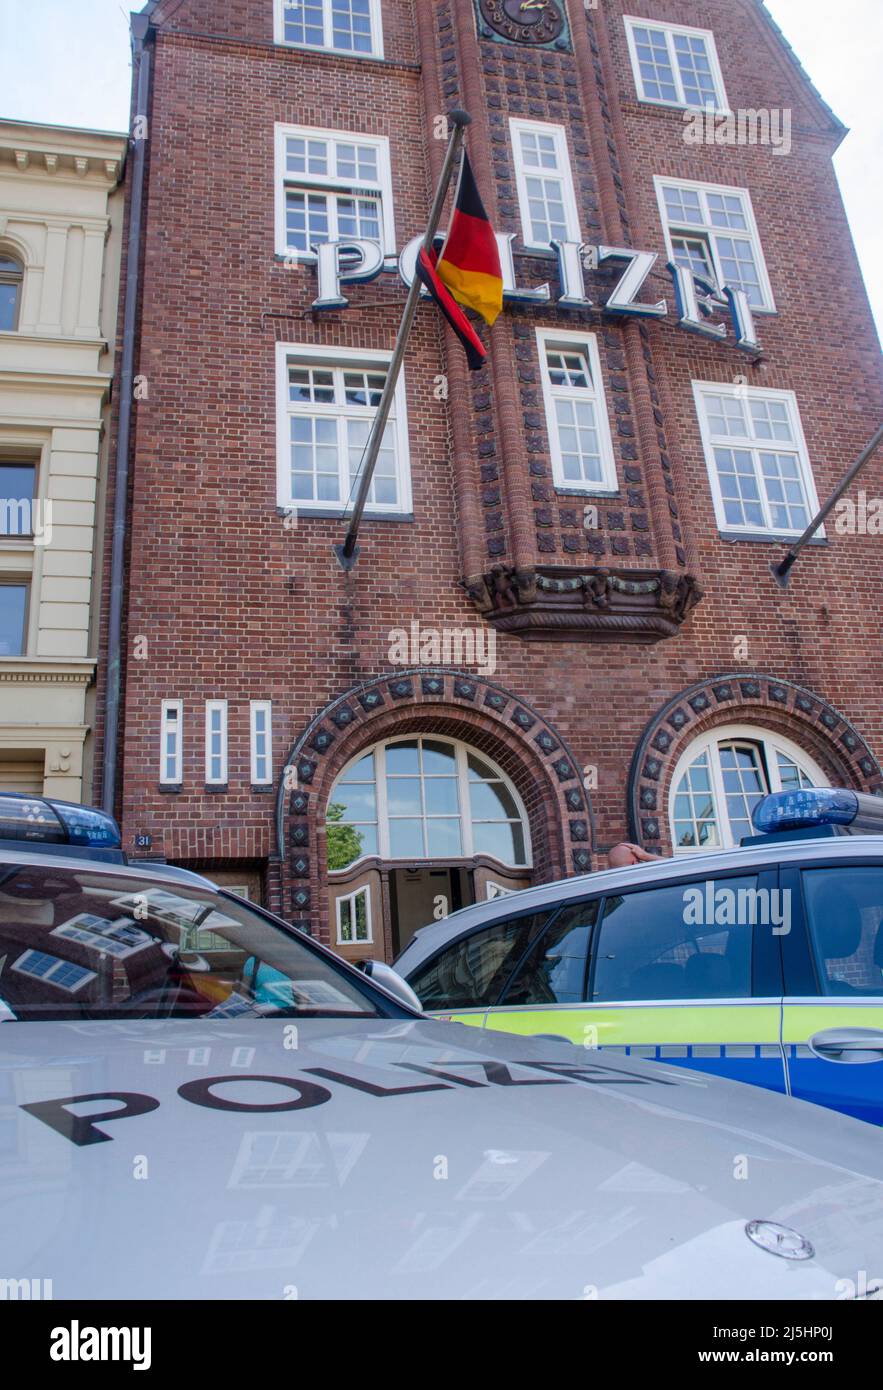 Amburgo - Die Davidwache, bezeichnet, ist das Gebäude des Hamburger Polizeikommissariats 15 Foto Stock